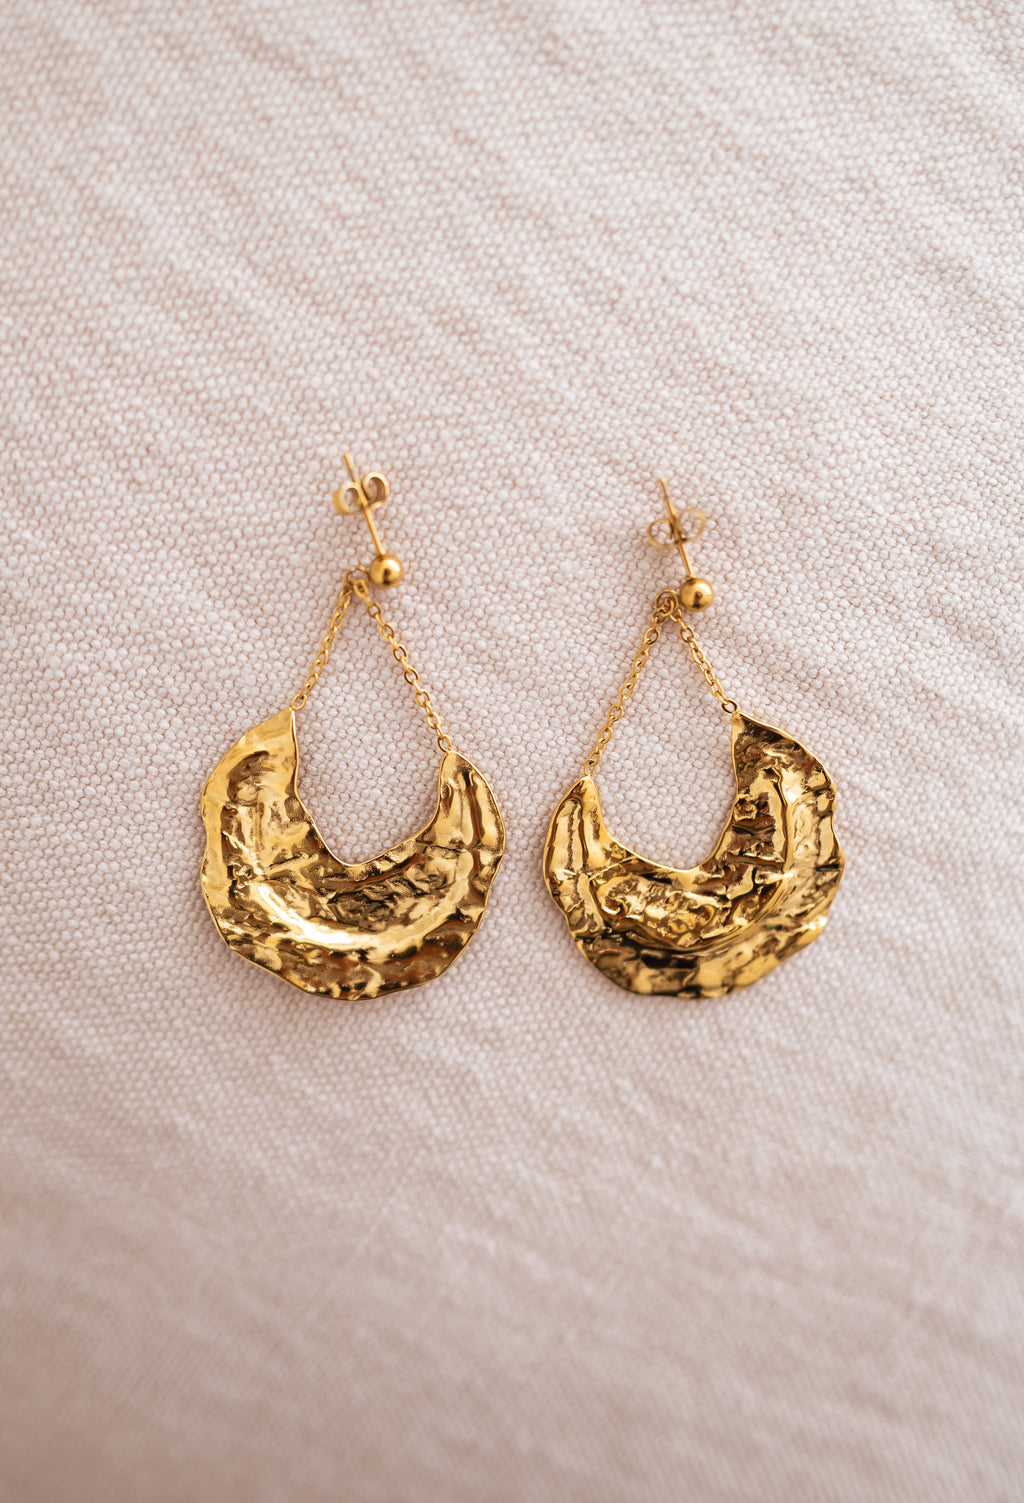 Wym earrings - Golden